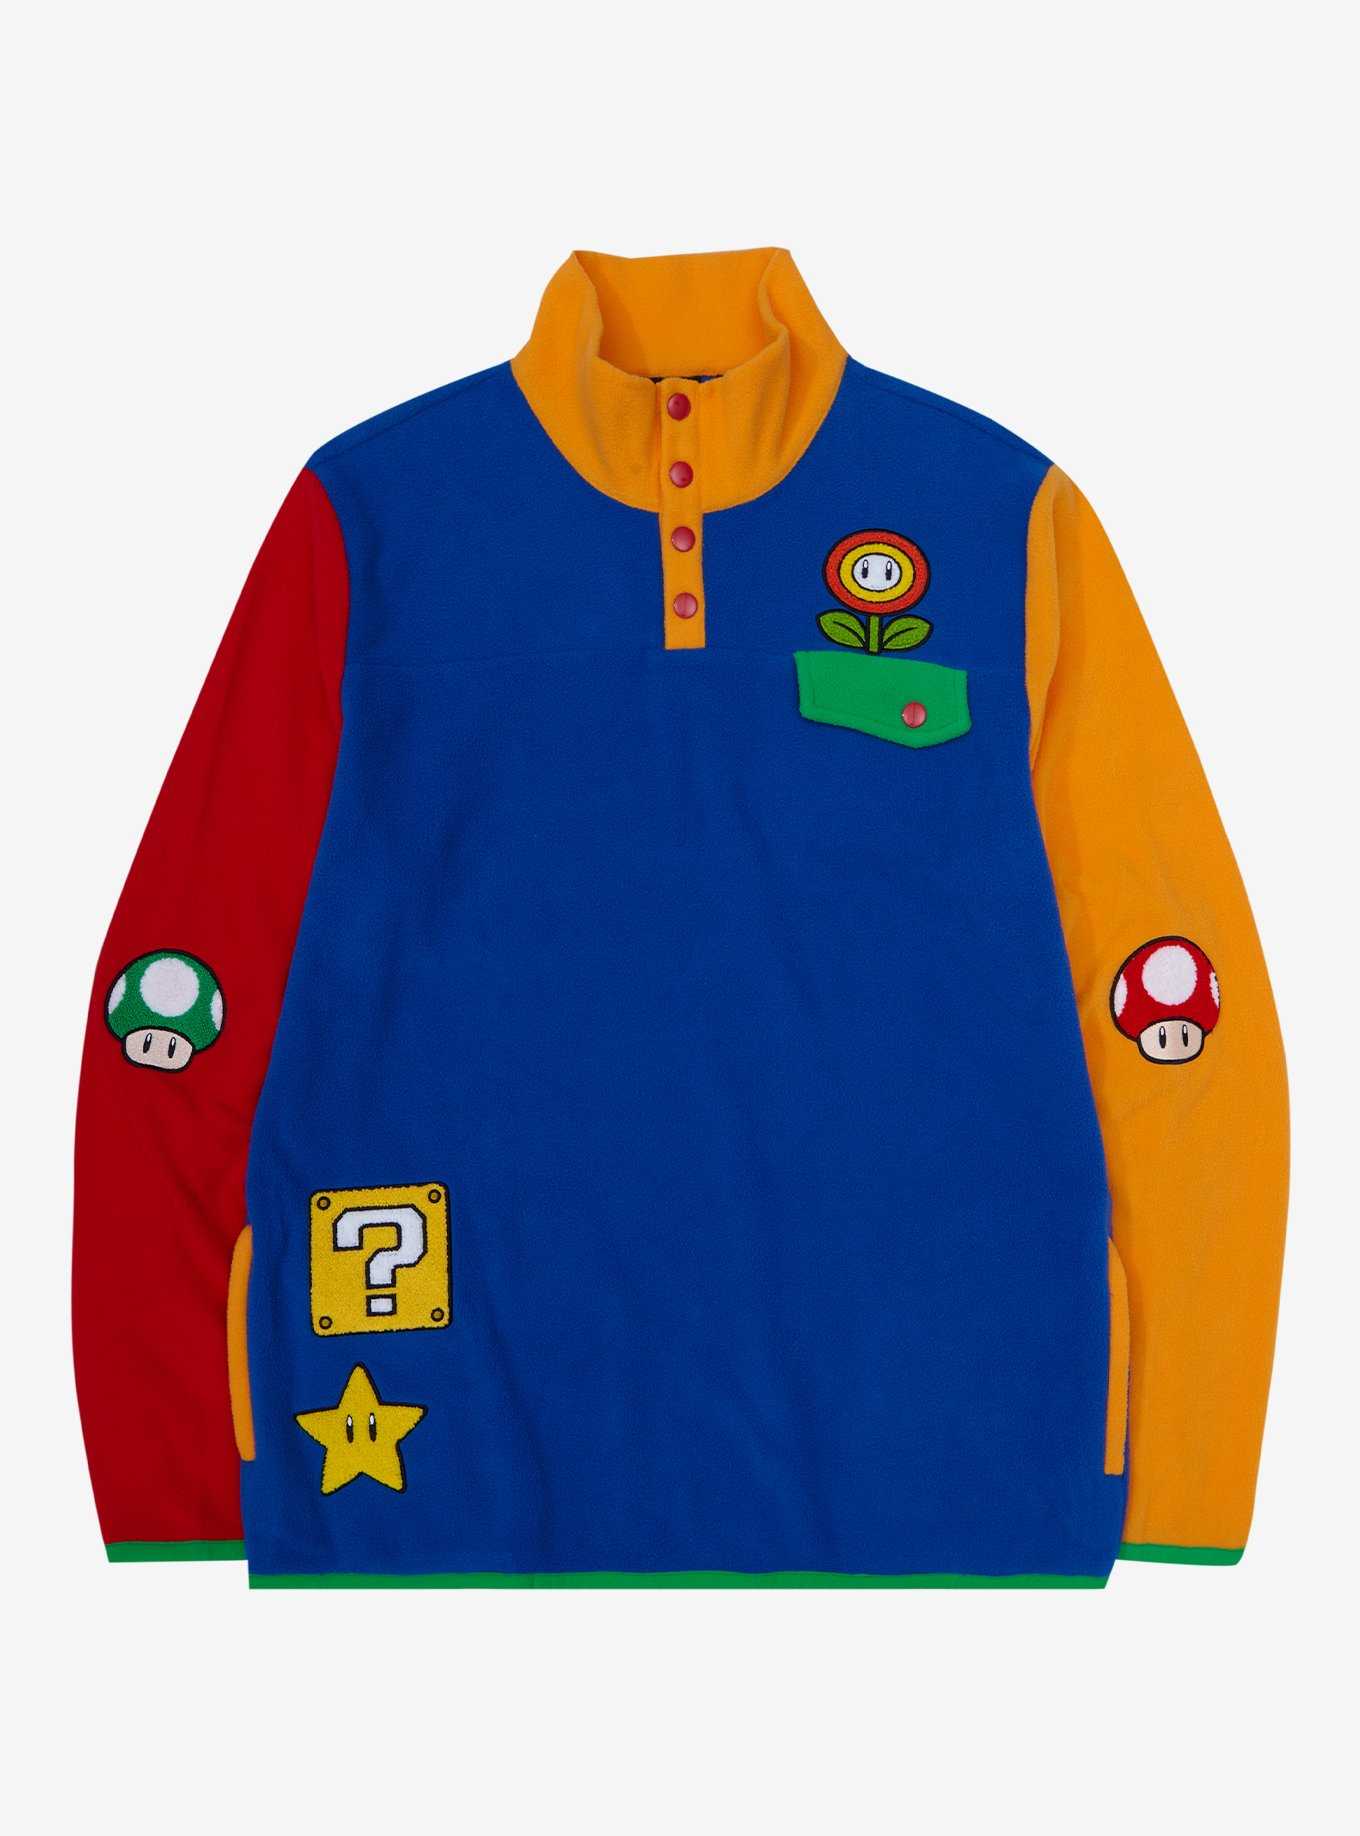 Nintendo Super Mario Bros. Icons Color Block Fleece Jacket - BoxLunch Exclusive, , hi-res